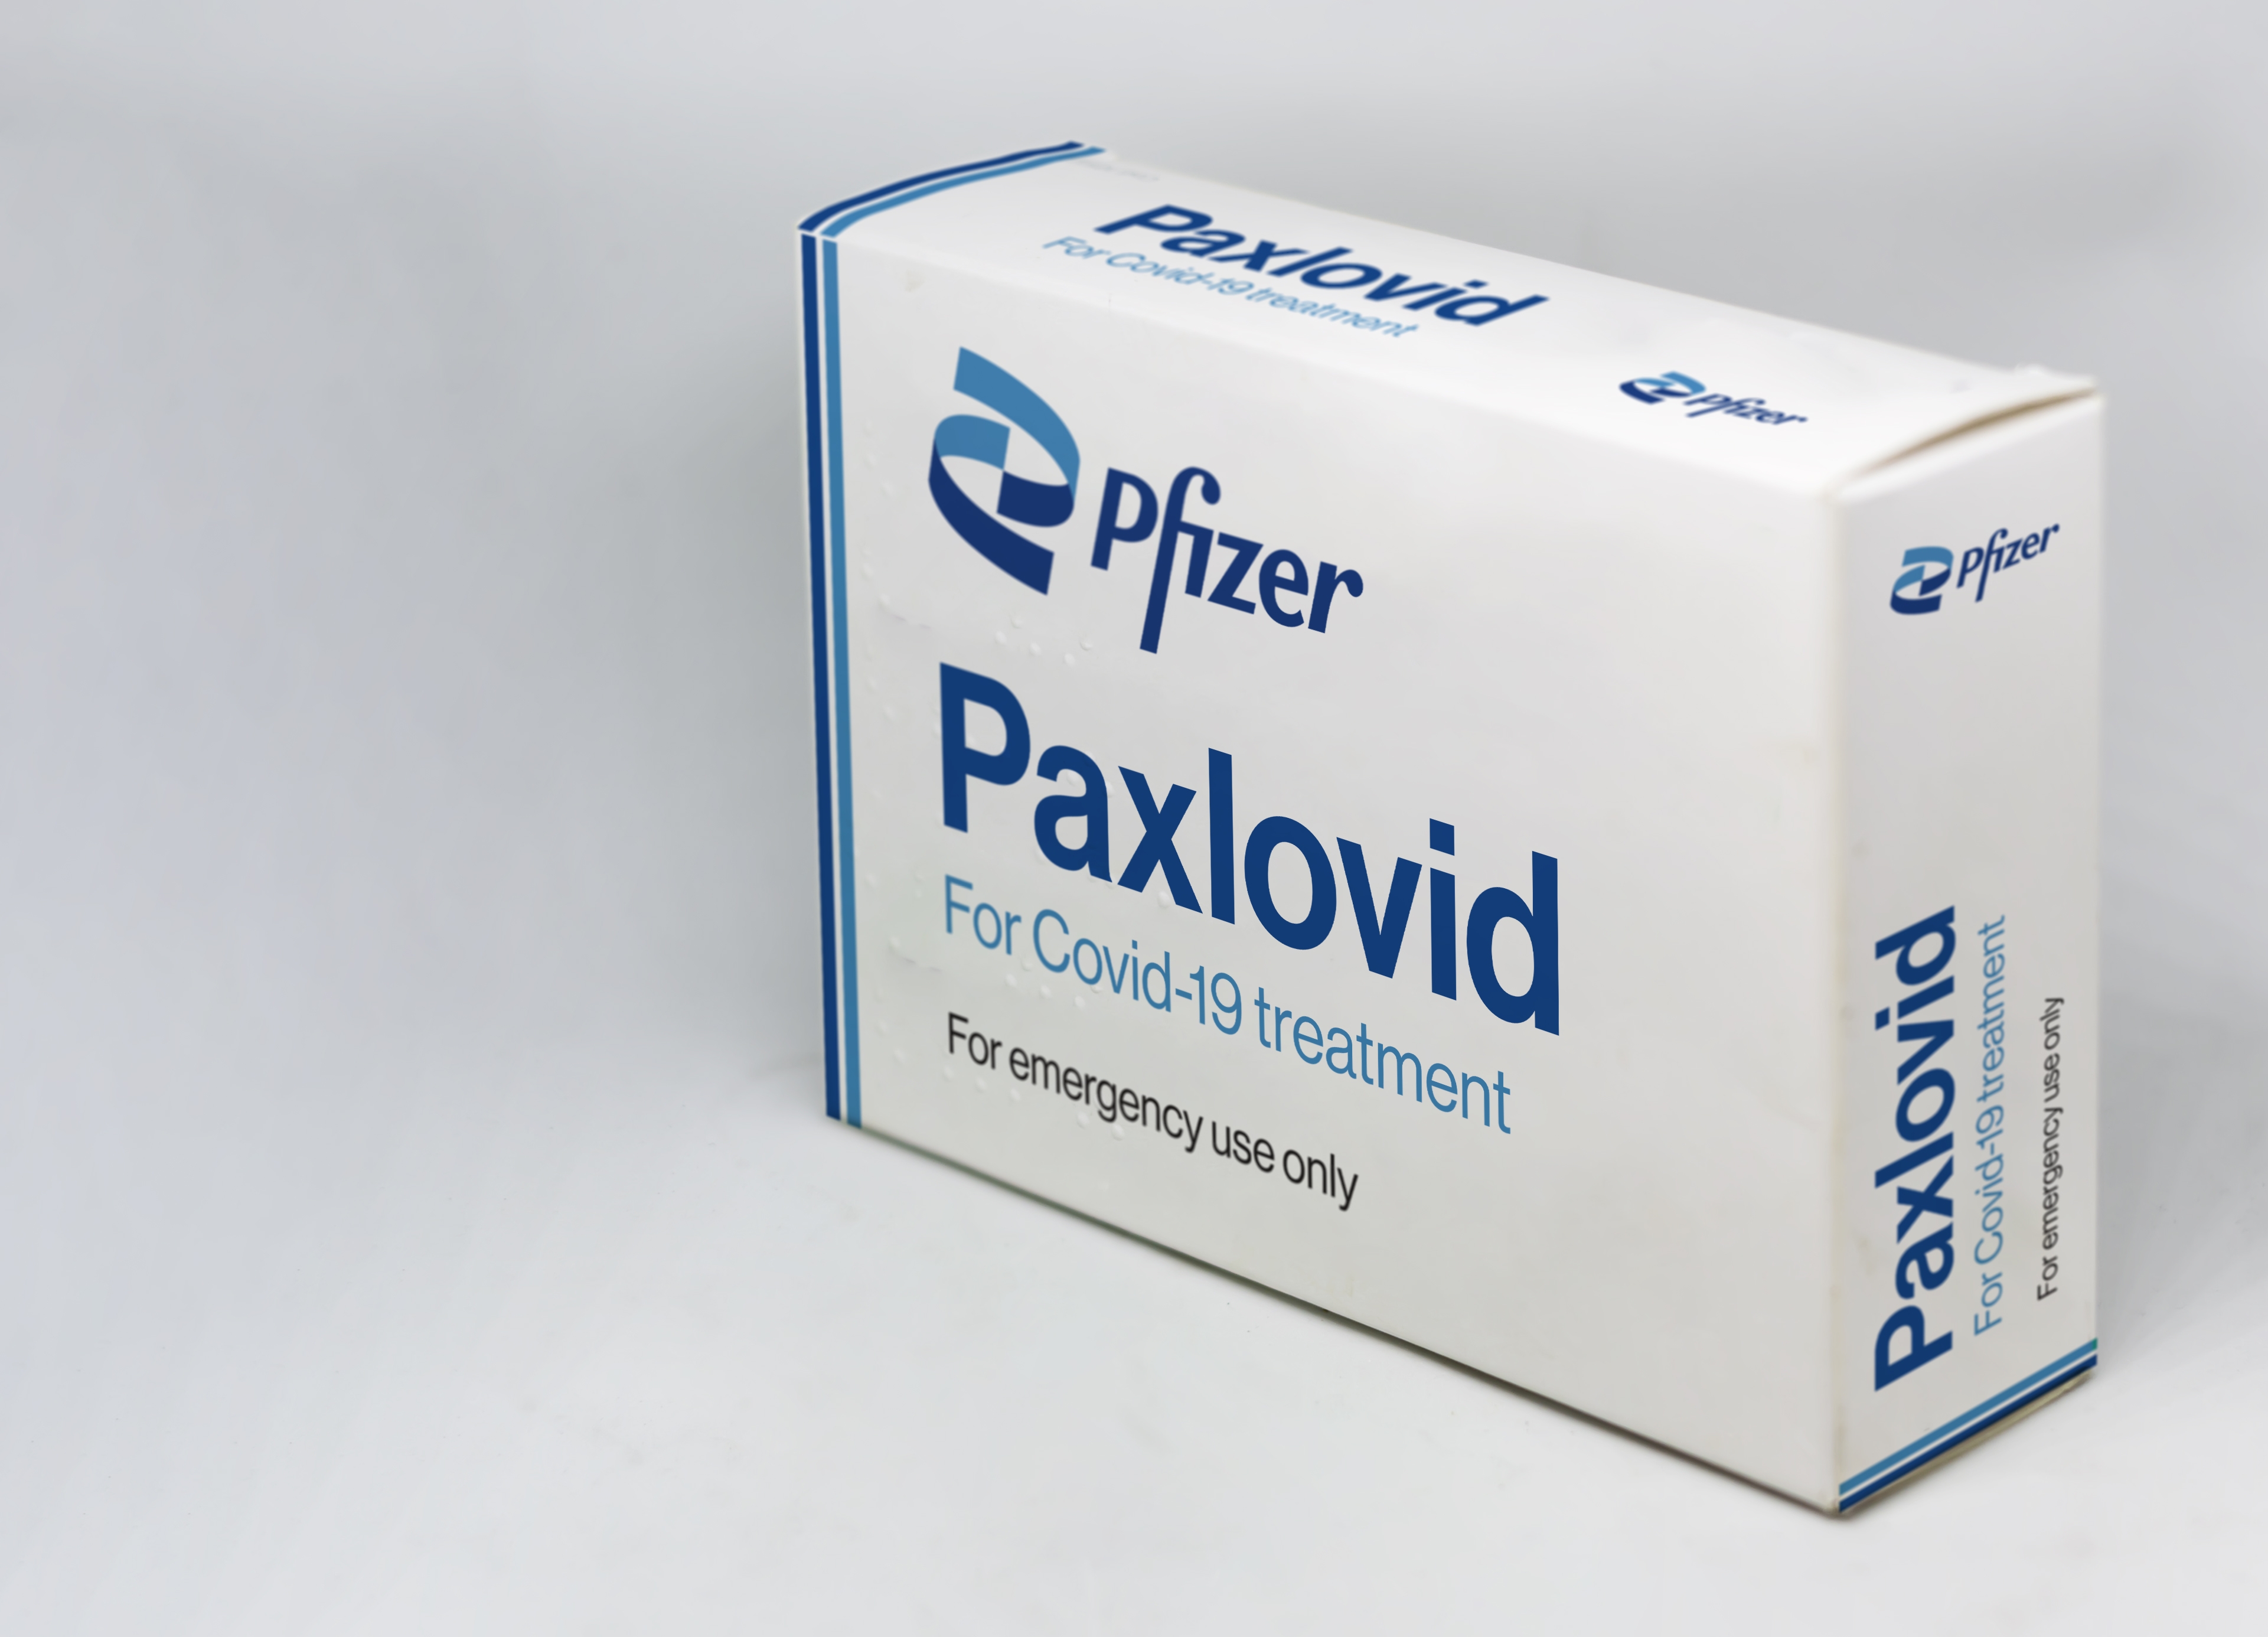     Covid-19: les autorités de santé autorisent le traitement antiviral Paxlovid

